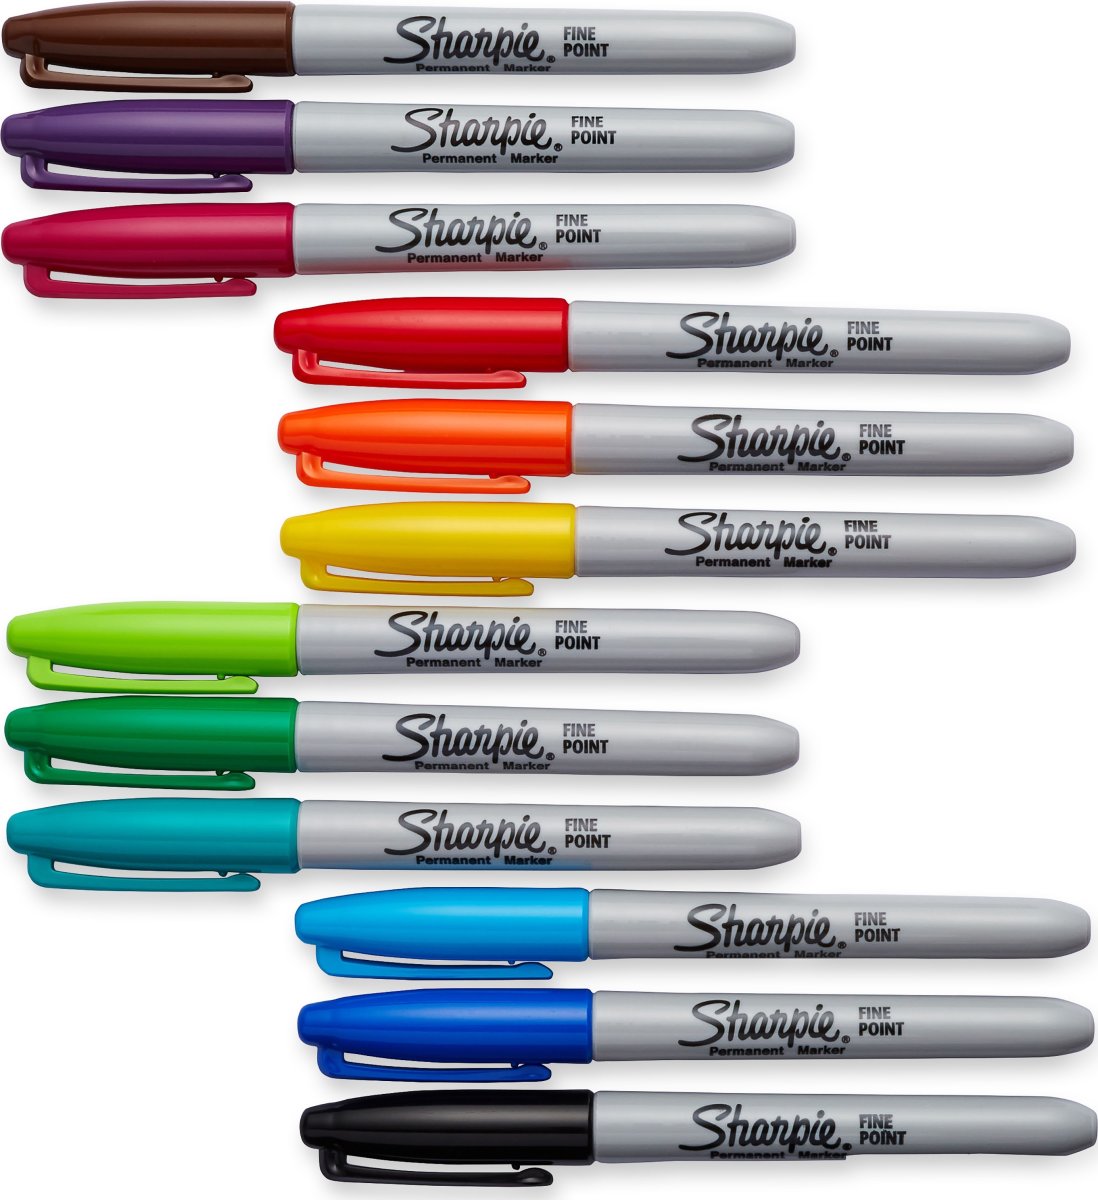 Sharpie Permanent Marker | F | 12 färger